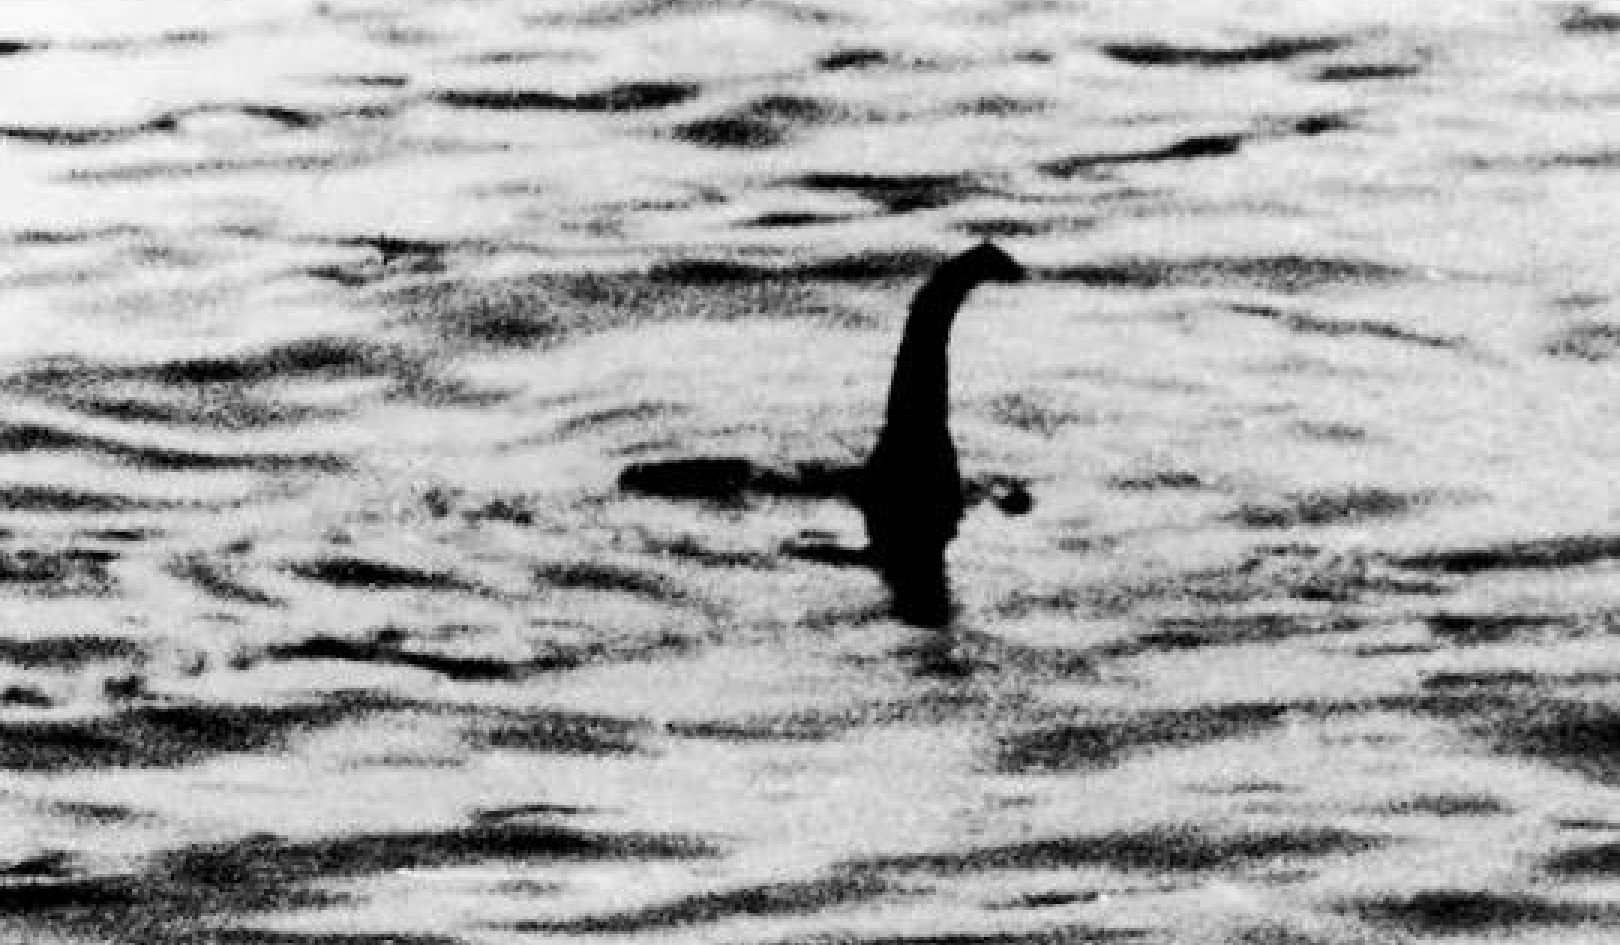 Le monstre du Loch Ness est-il réel ?